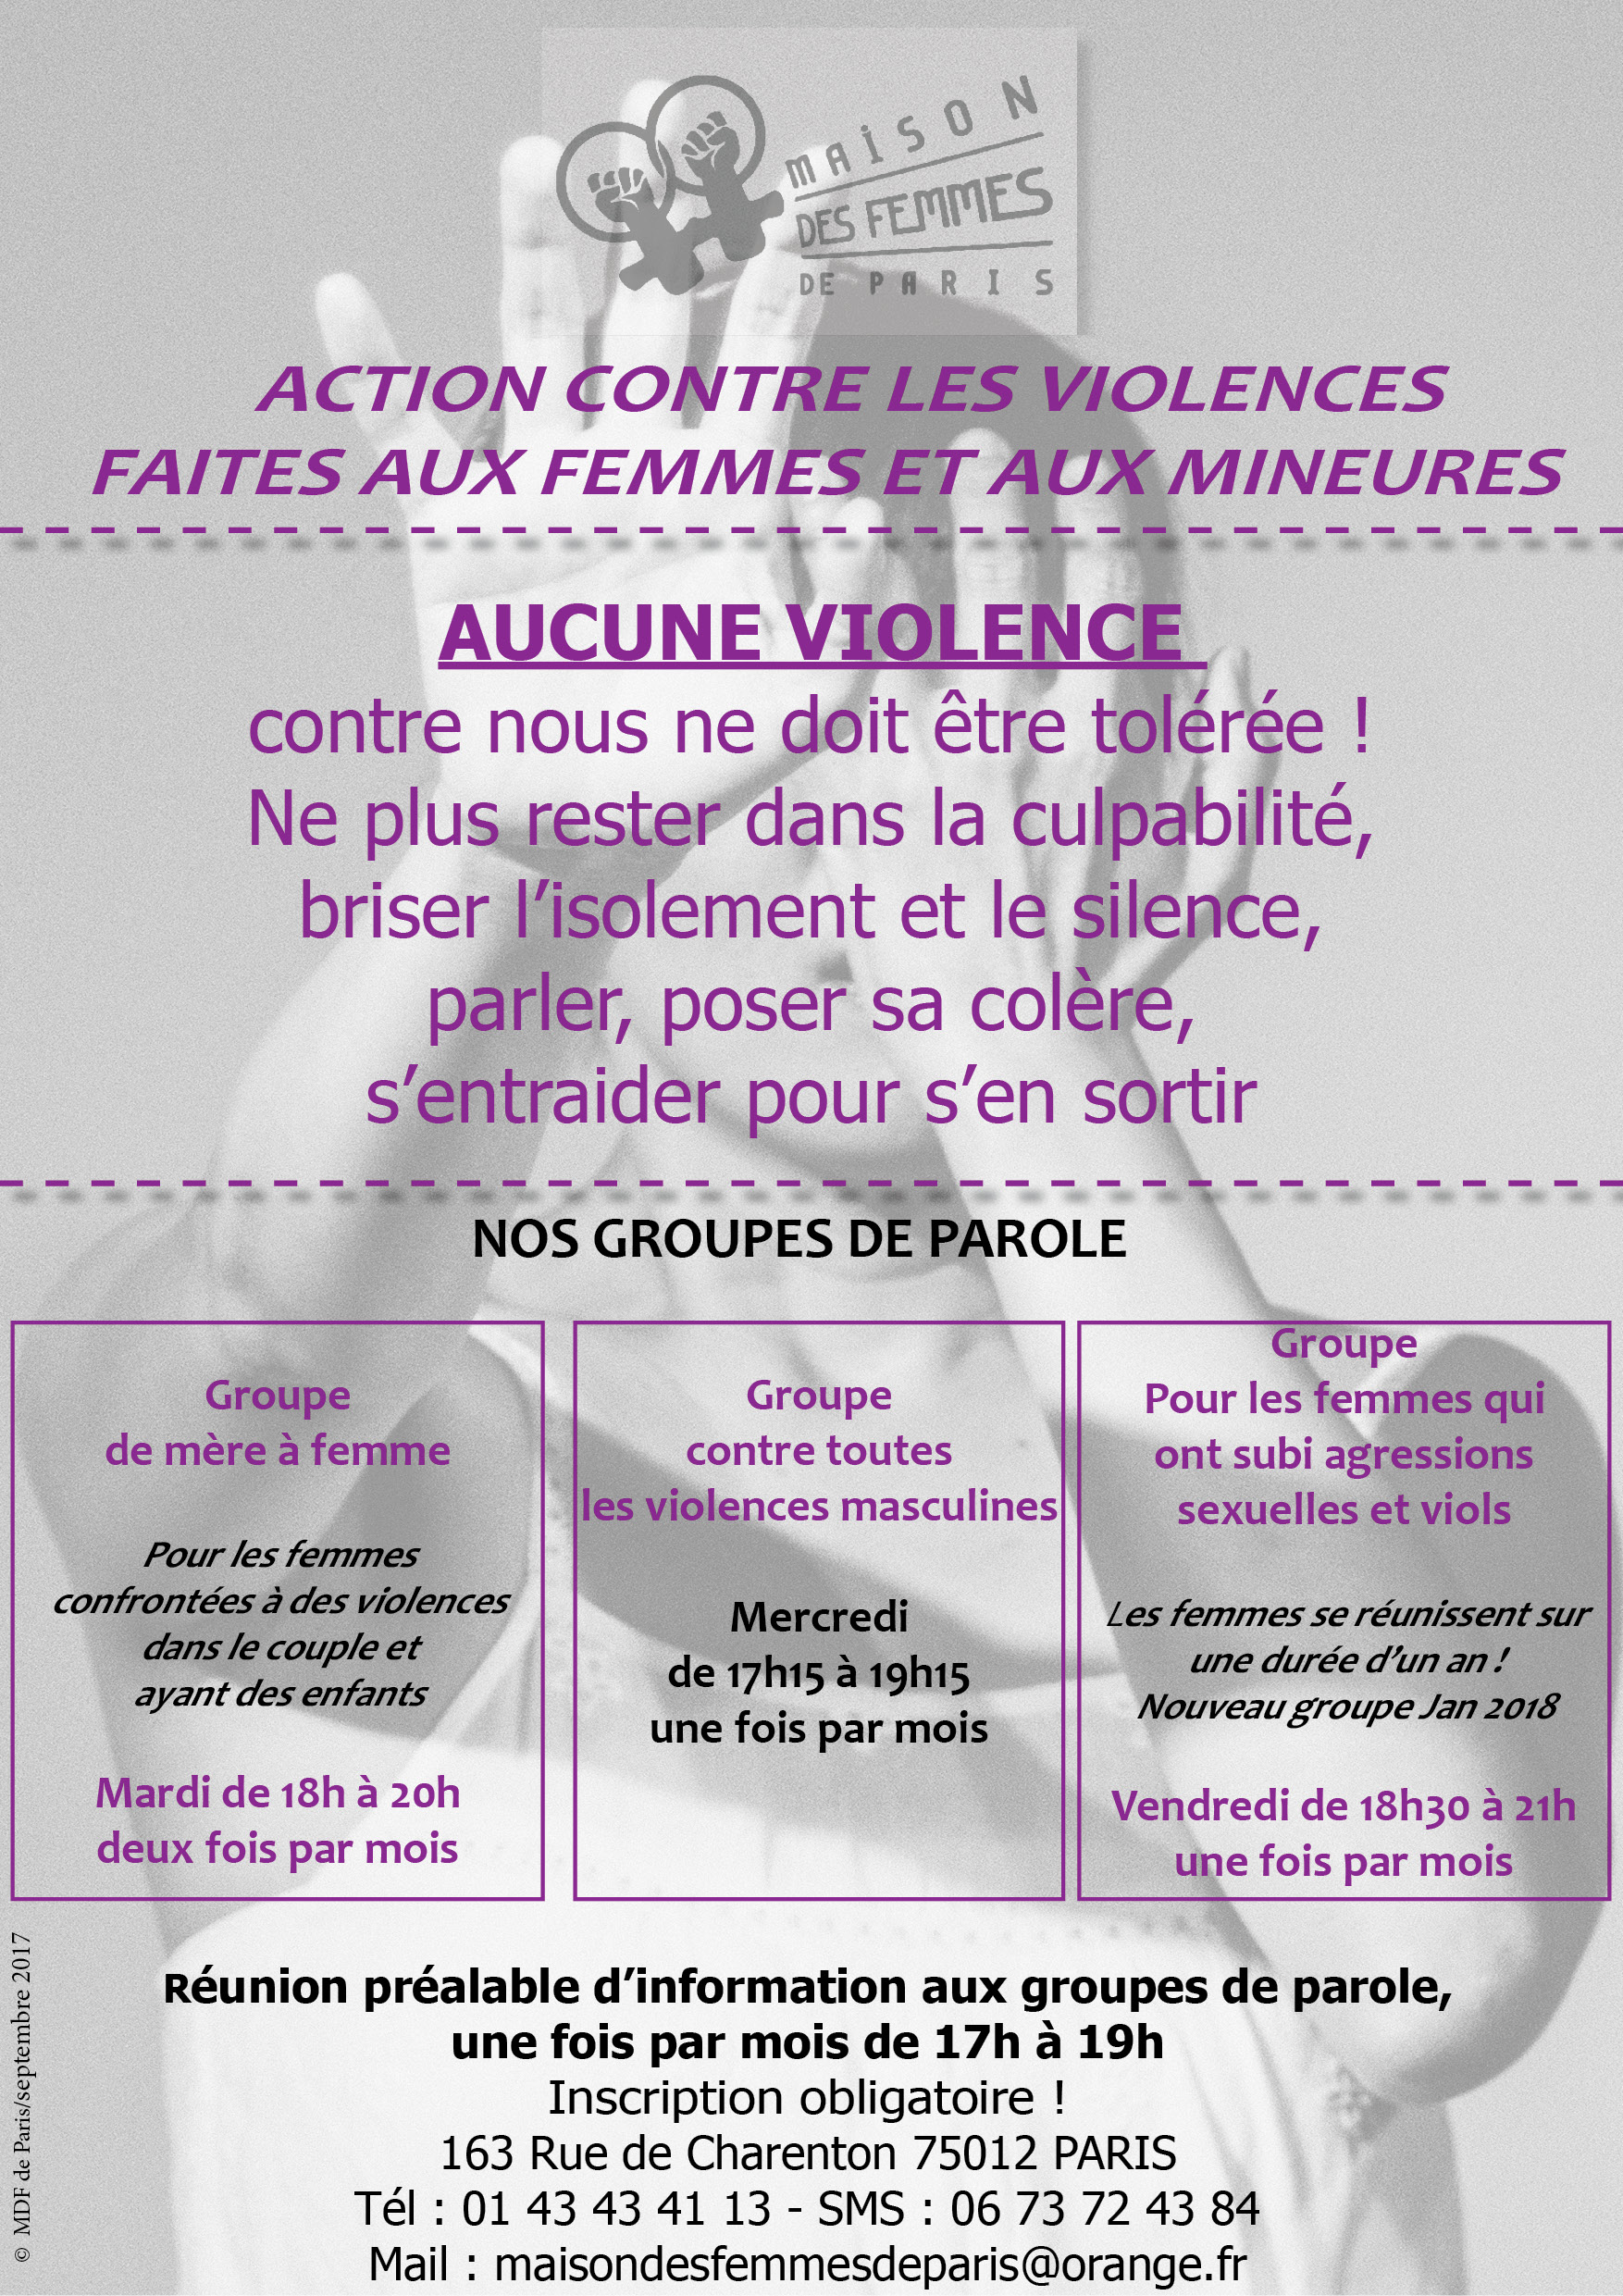 Action contre les violences masculines faites aux femmes Maison des Femmes de Paris